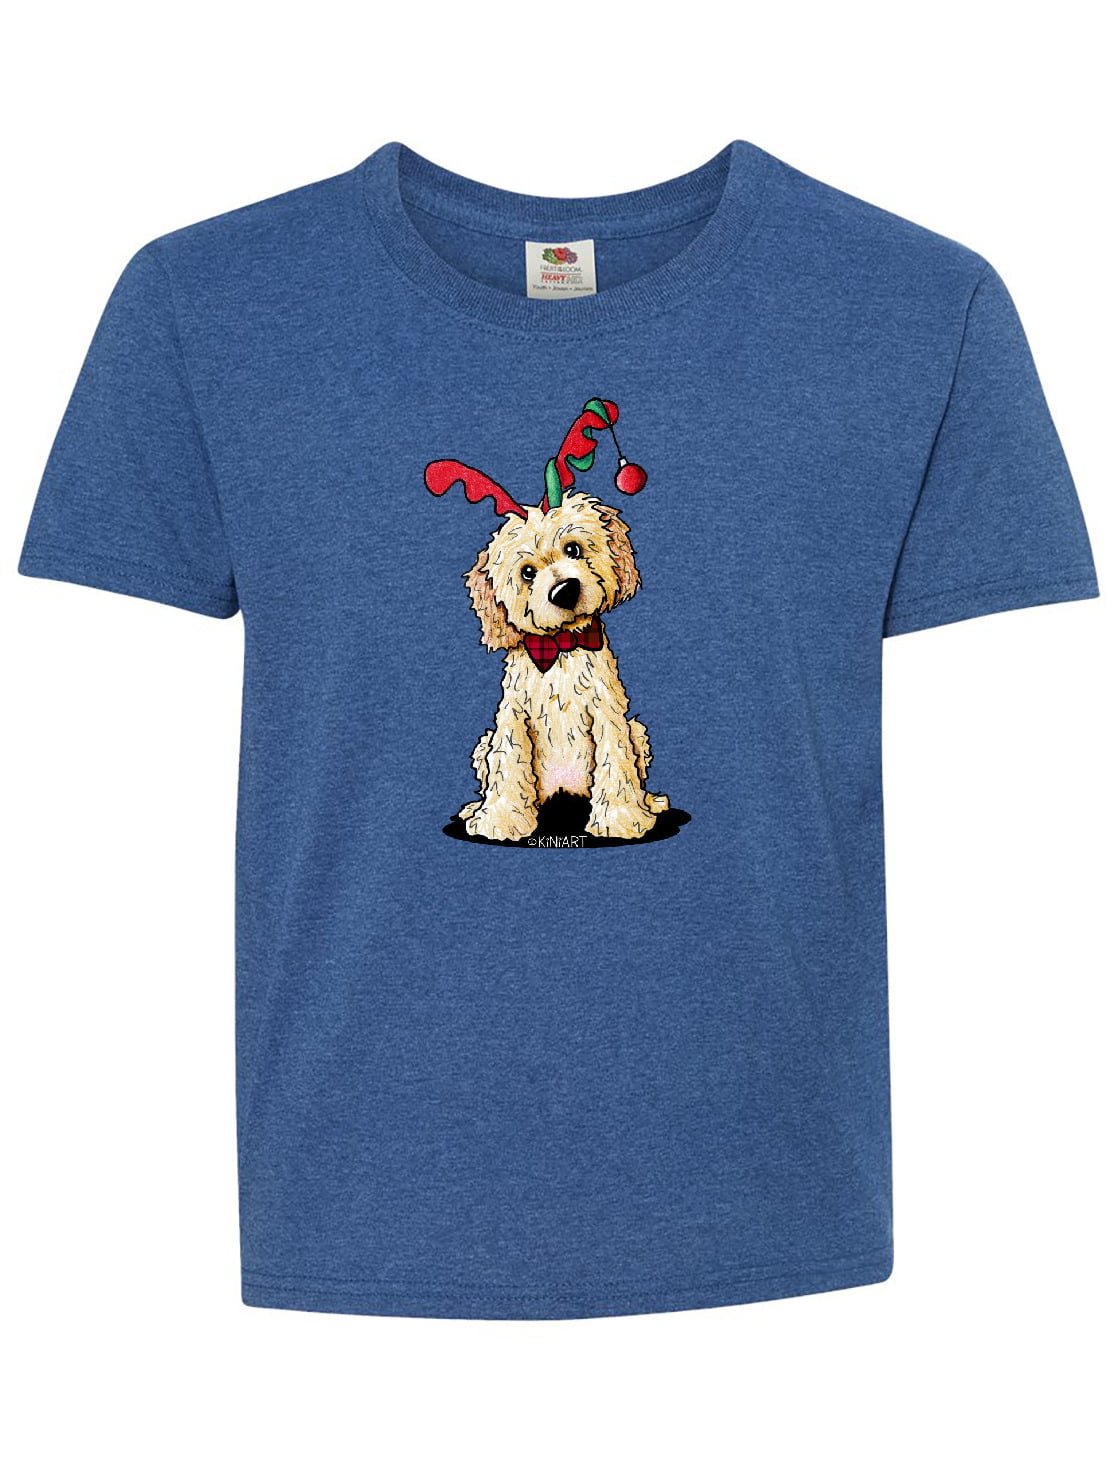 KiniArt Goldendoodle Reindeer Youth T-Shirt - KiniArt - Walmart.com ...